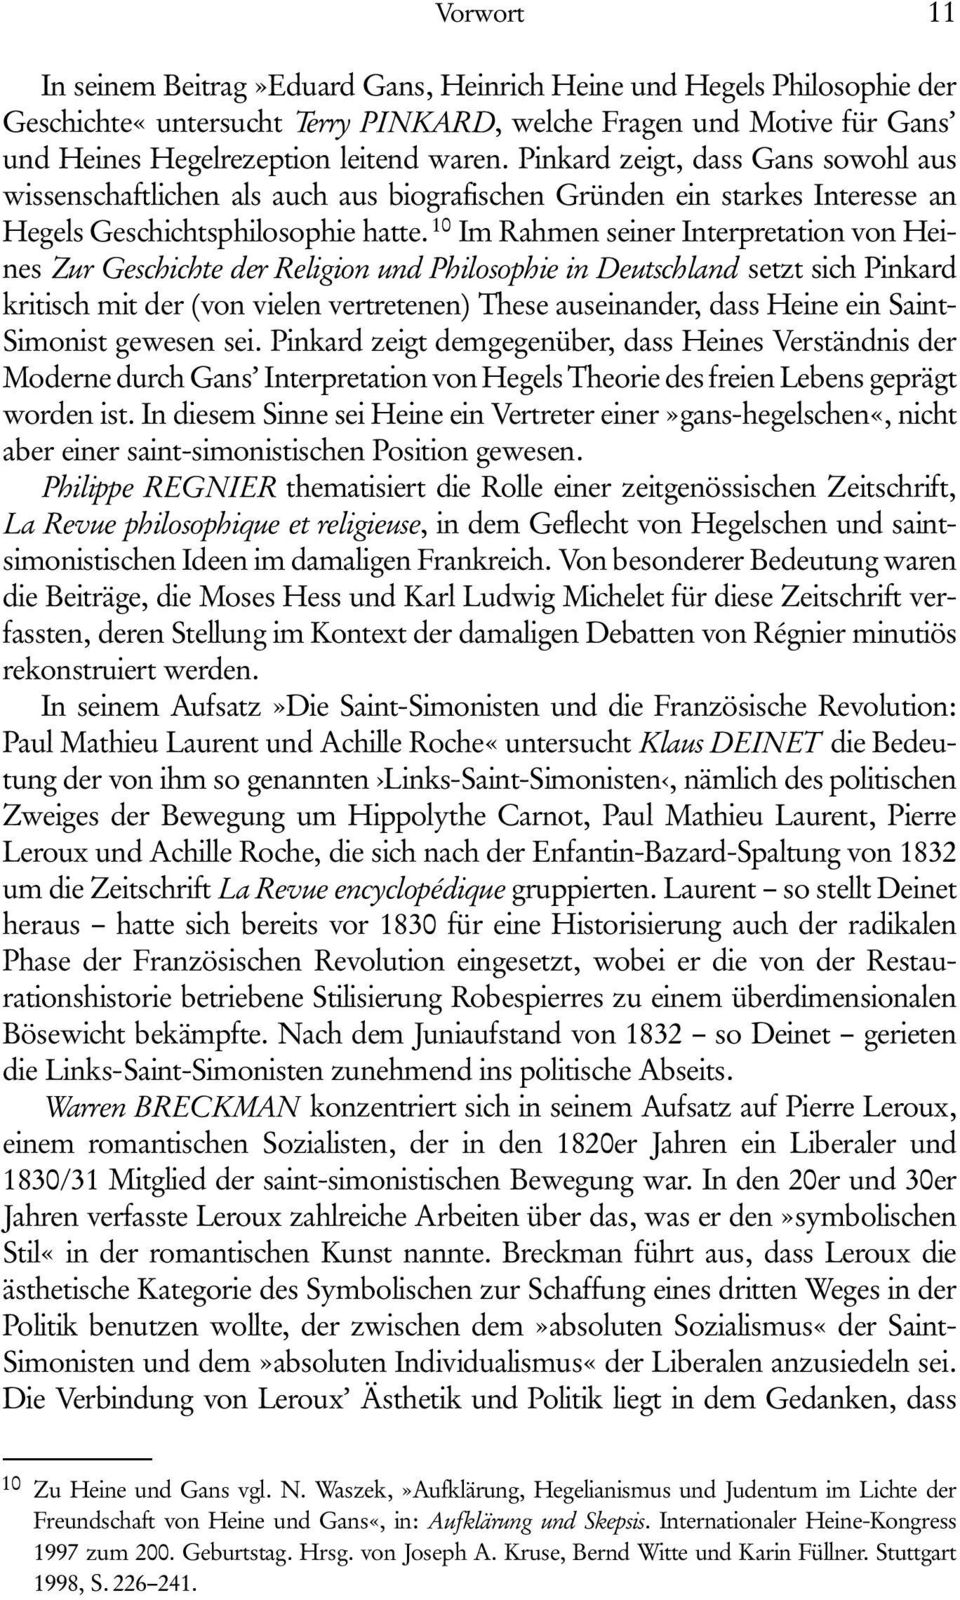 10 Im Rahmen seiner Interpretation von Heines Zur Geschichte der Religion und Philosophie in Deutschland setzt sich Pinkard kritisch mit der (von vielen vertretenen) These auseinander, dass Heine ein